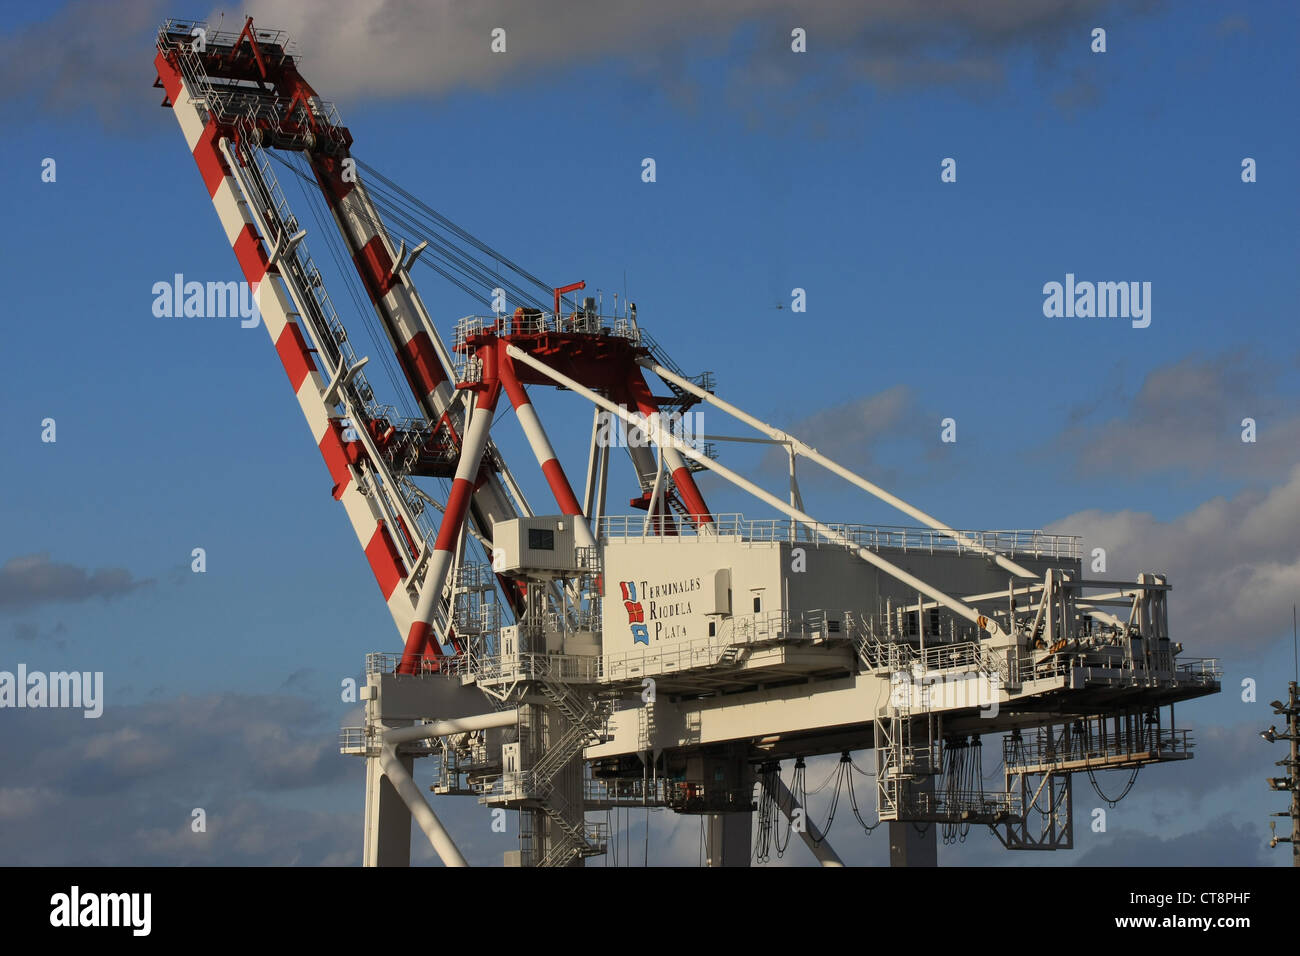 Terminales immagini e fotografie stock ad alta risoluzione - Alamy